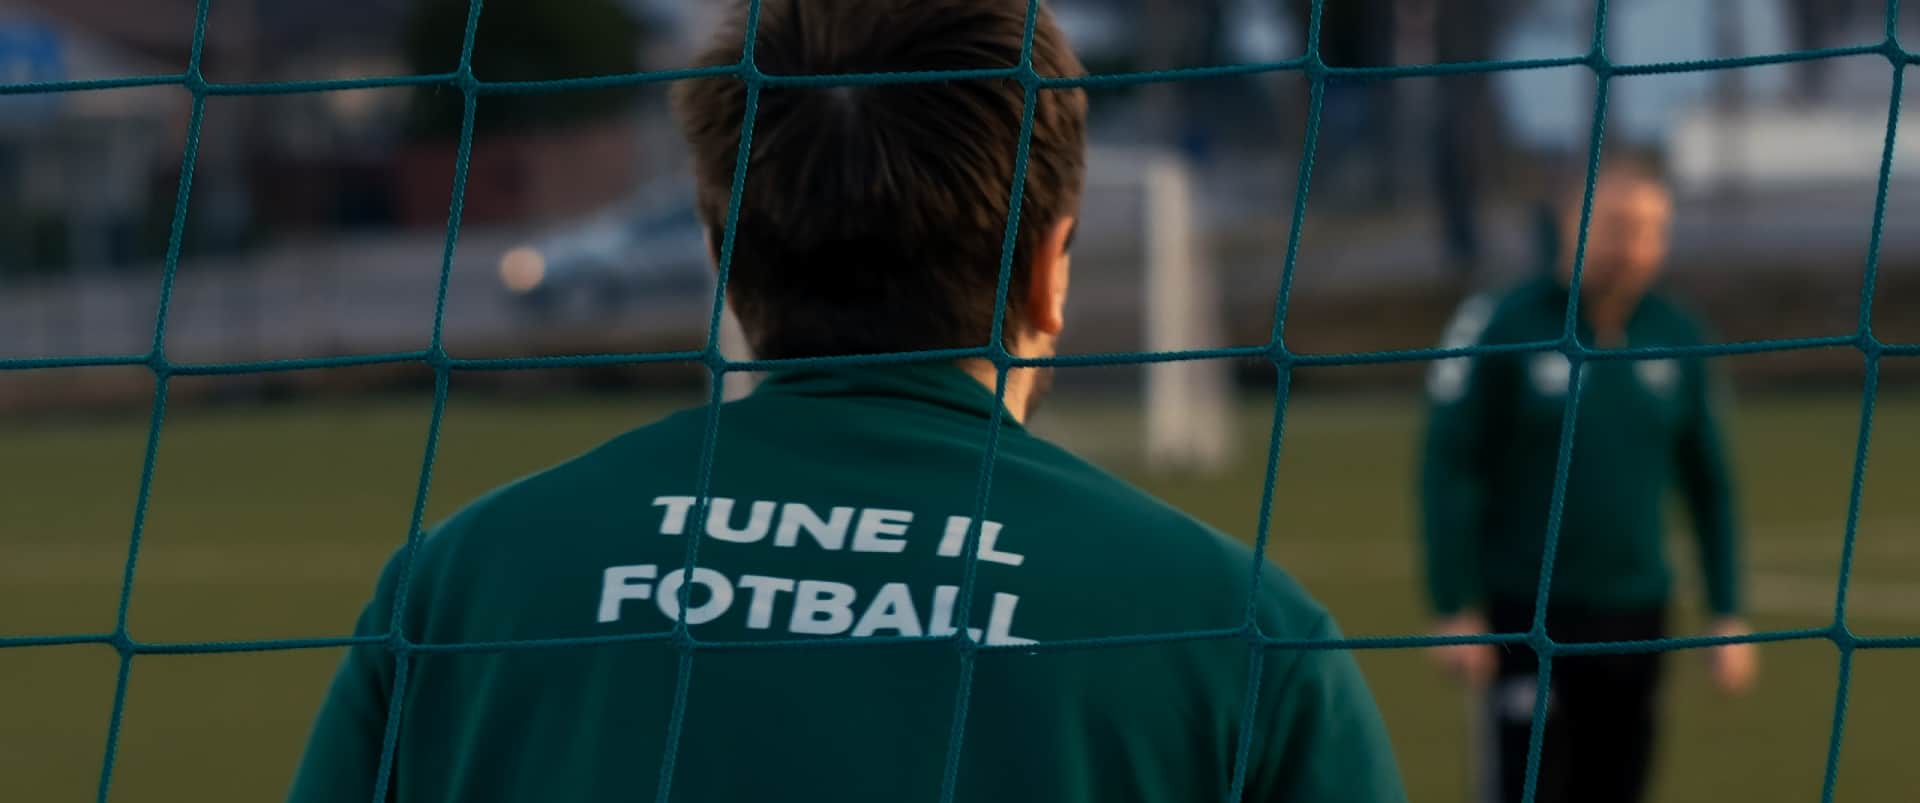 Reklame for Tune IL Fotball